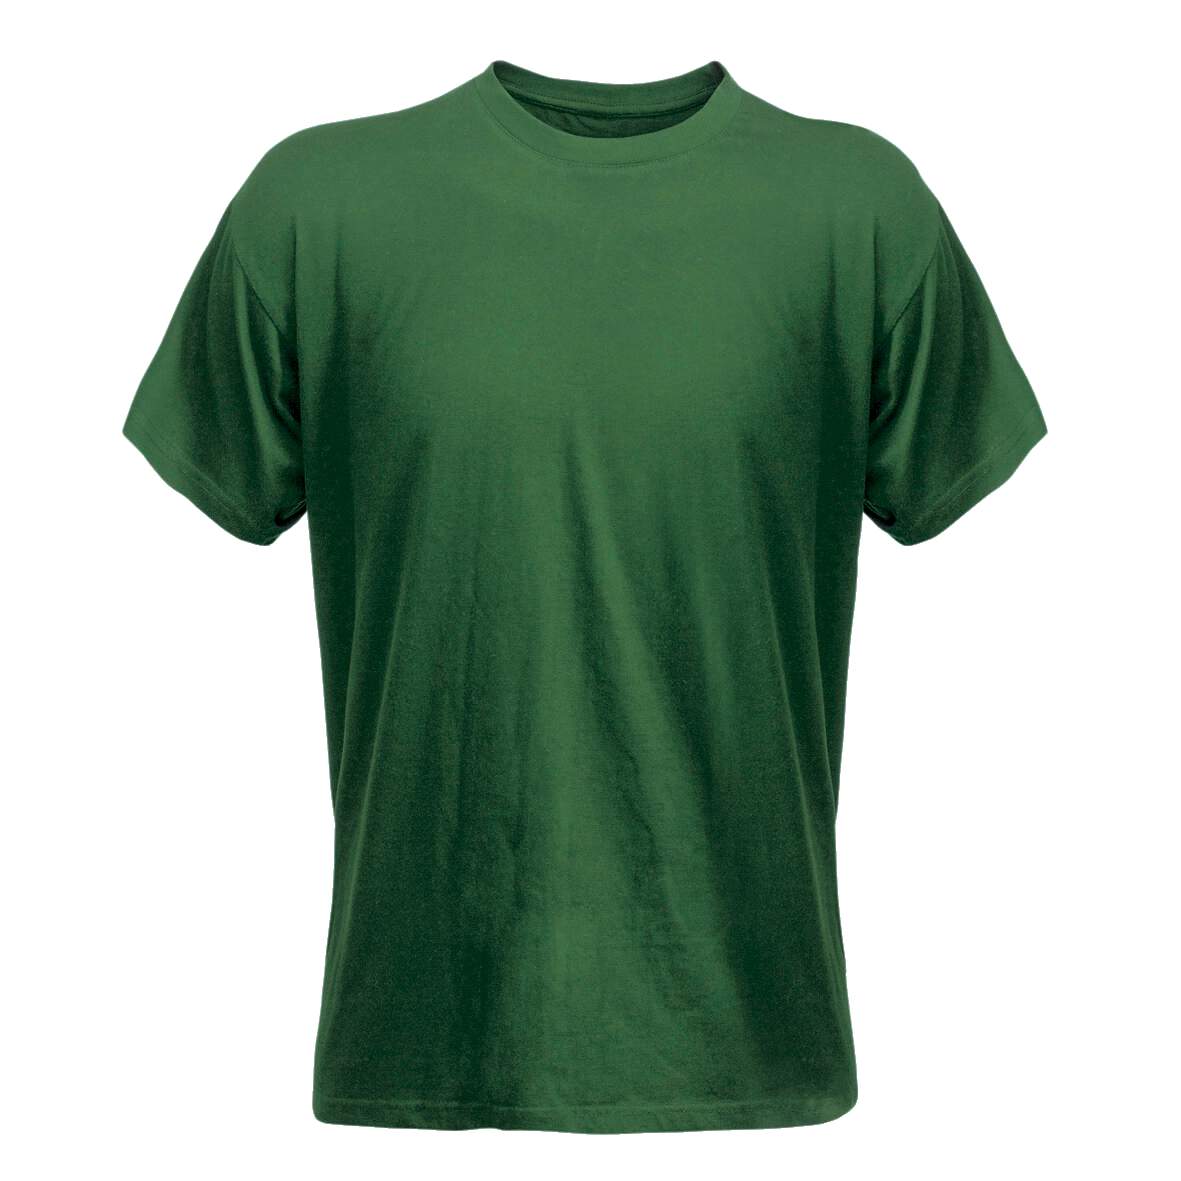 1138338 - T-Shirt grün Gr.L Code 1912